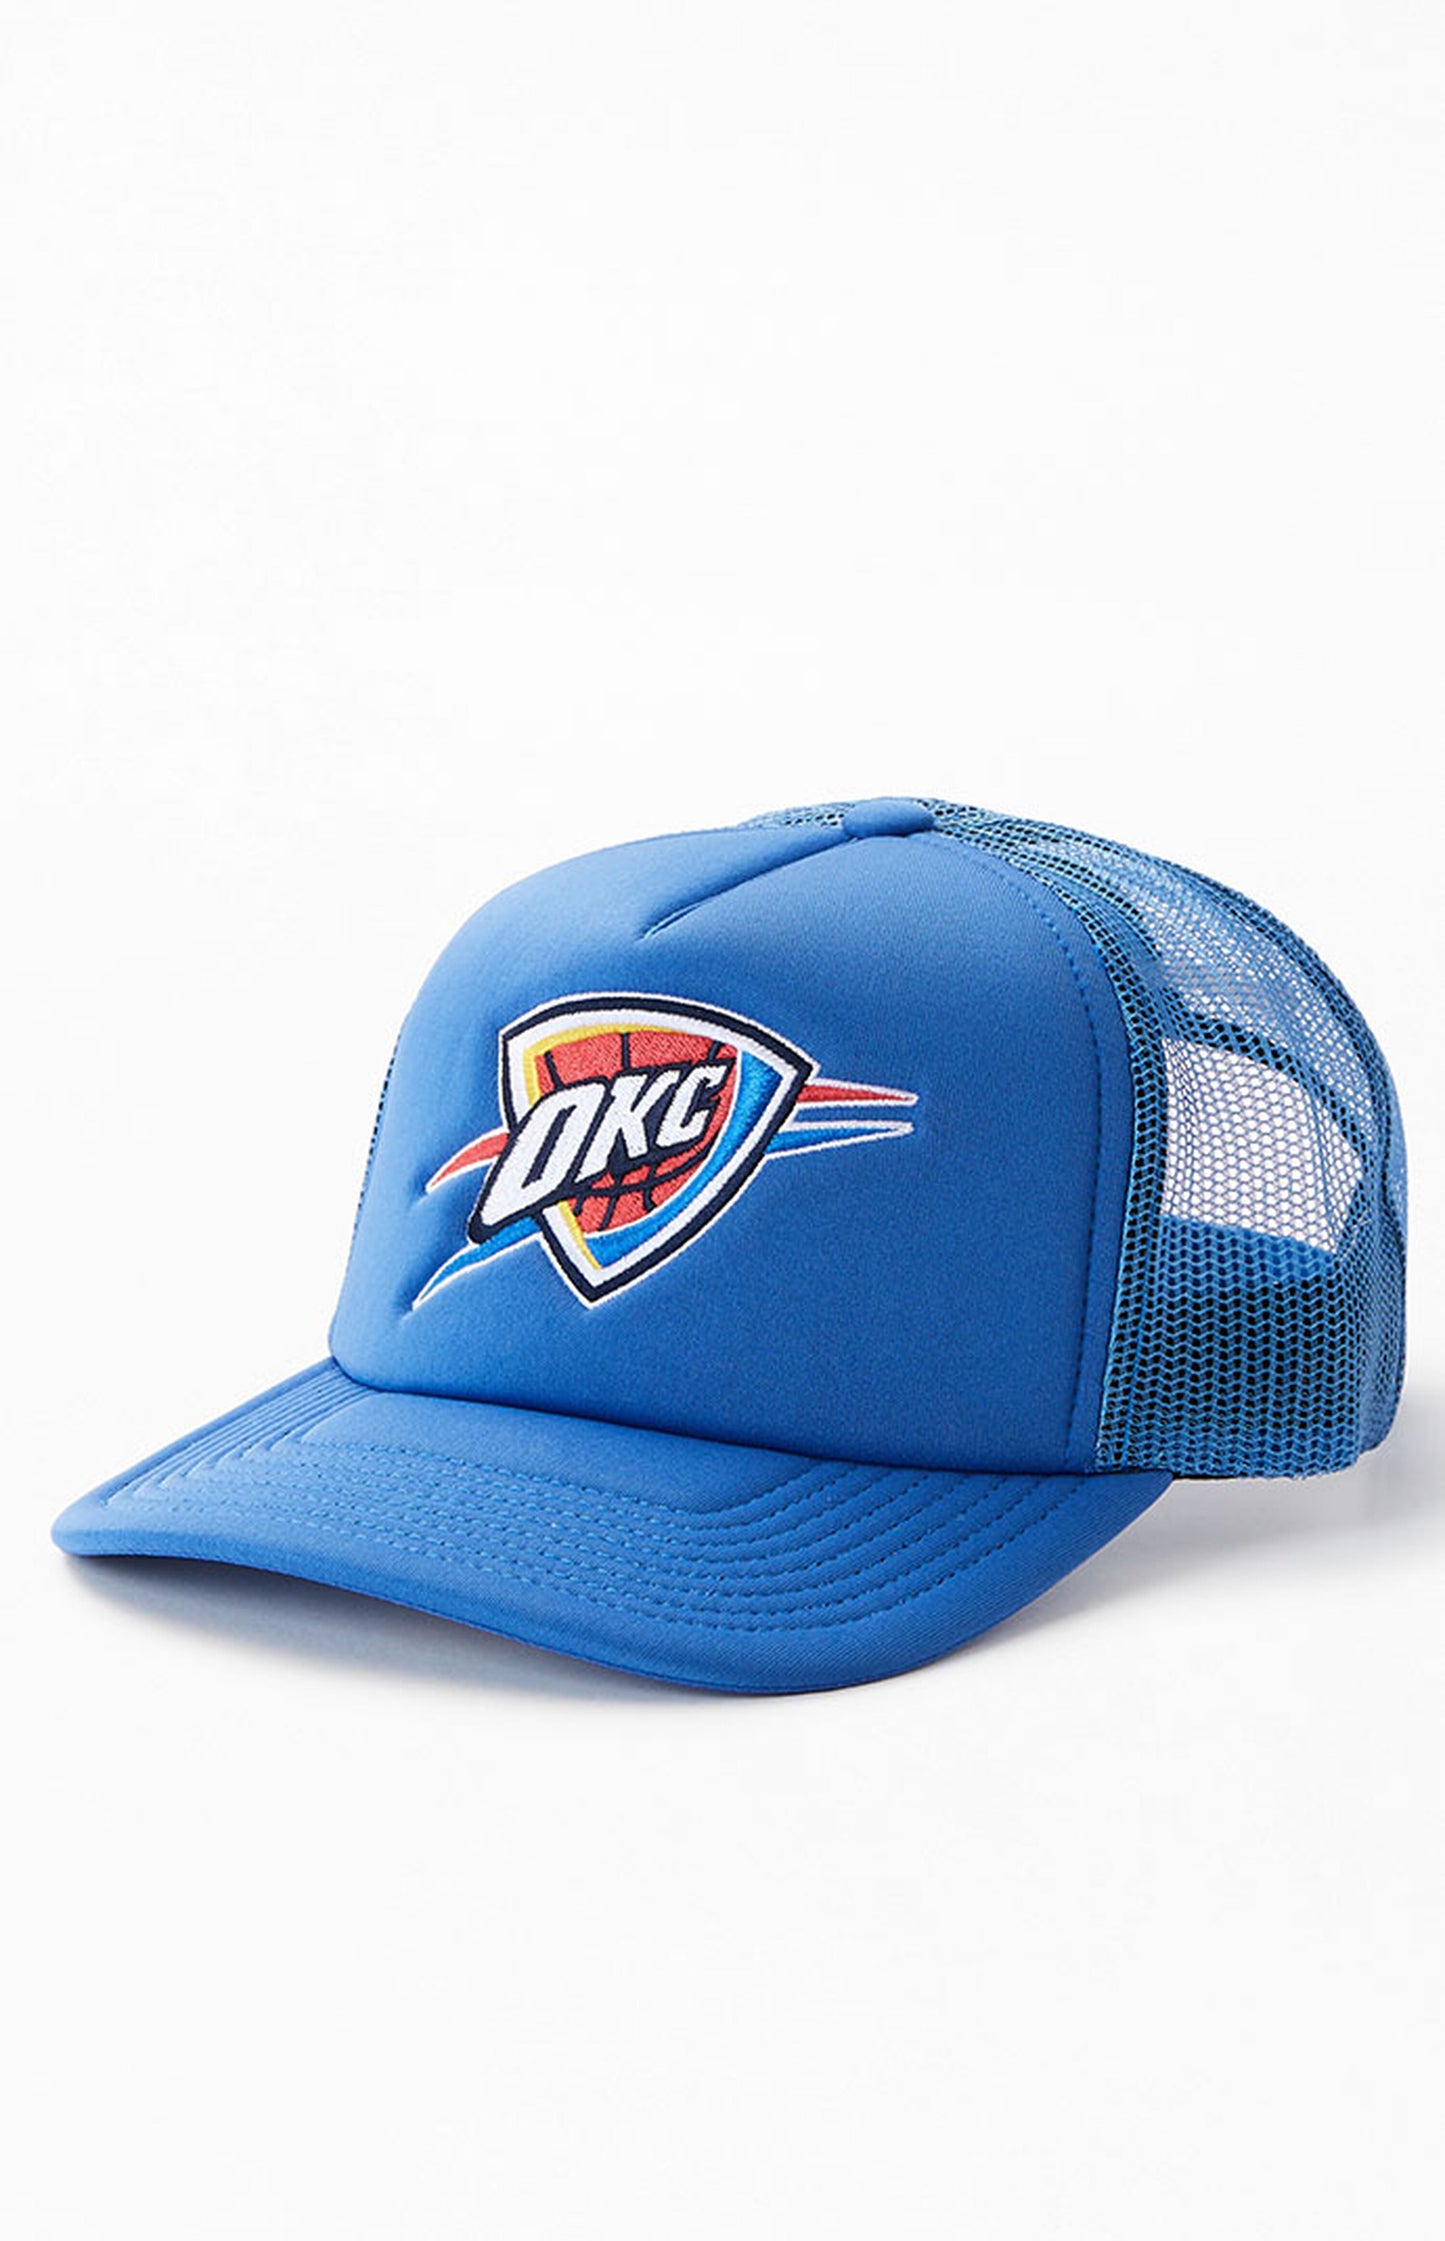 Oklahoma City Thunder Mitchell & Ness Trucker Hat